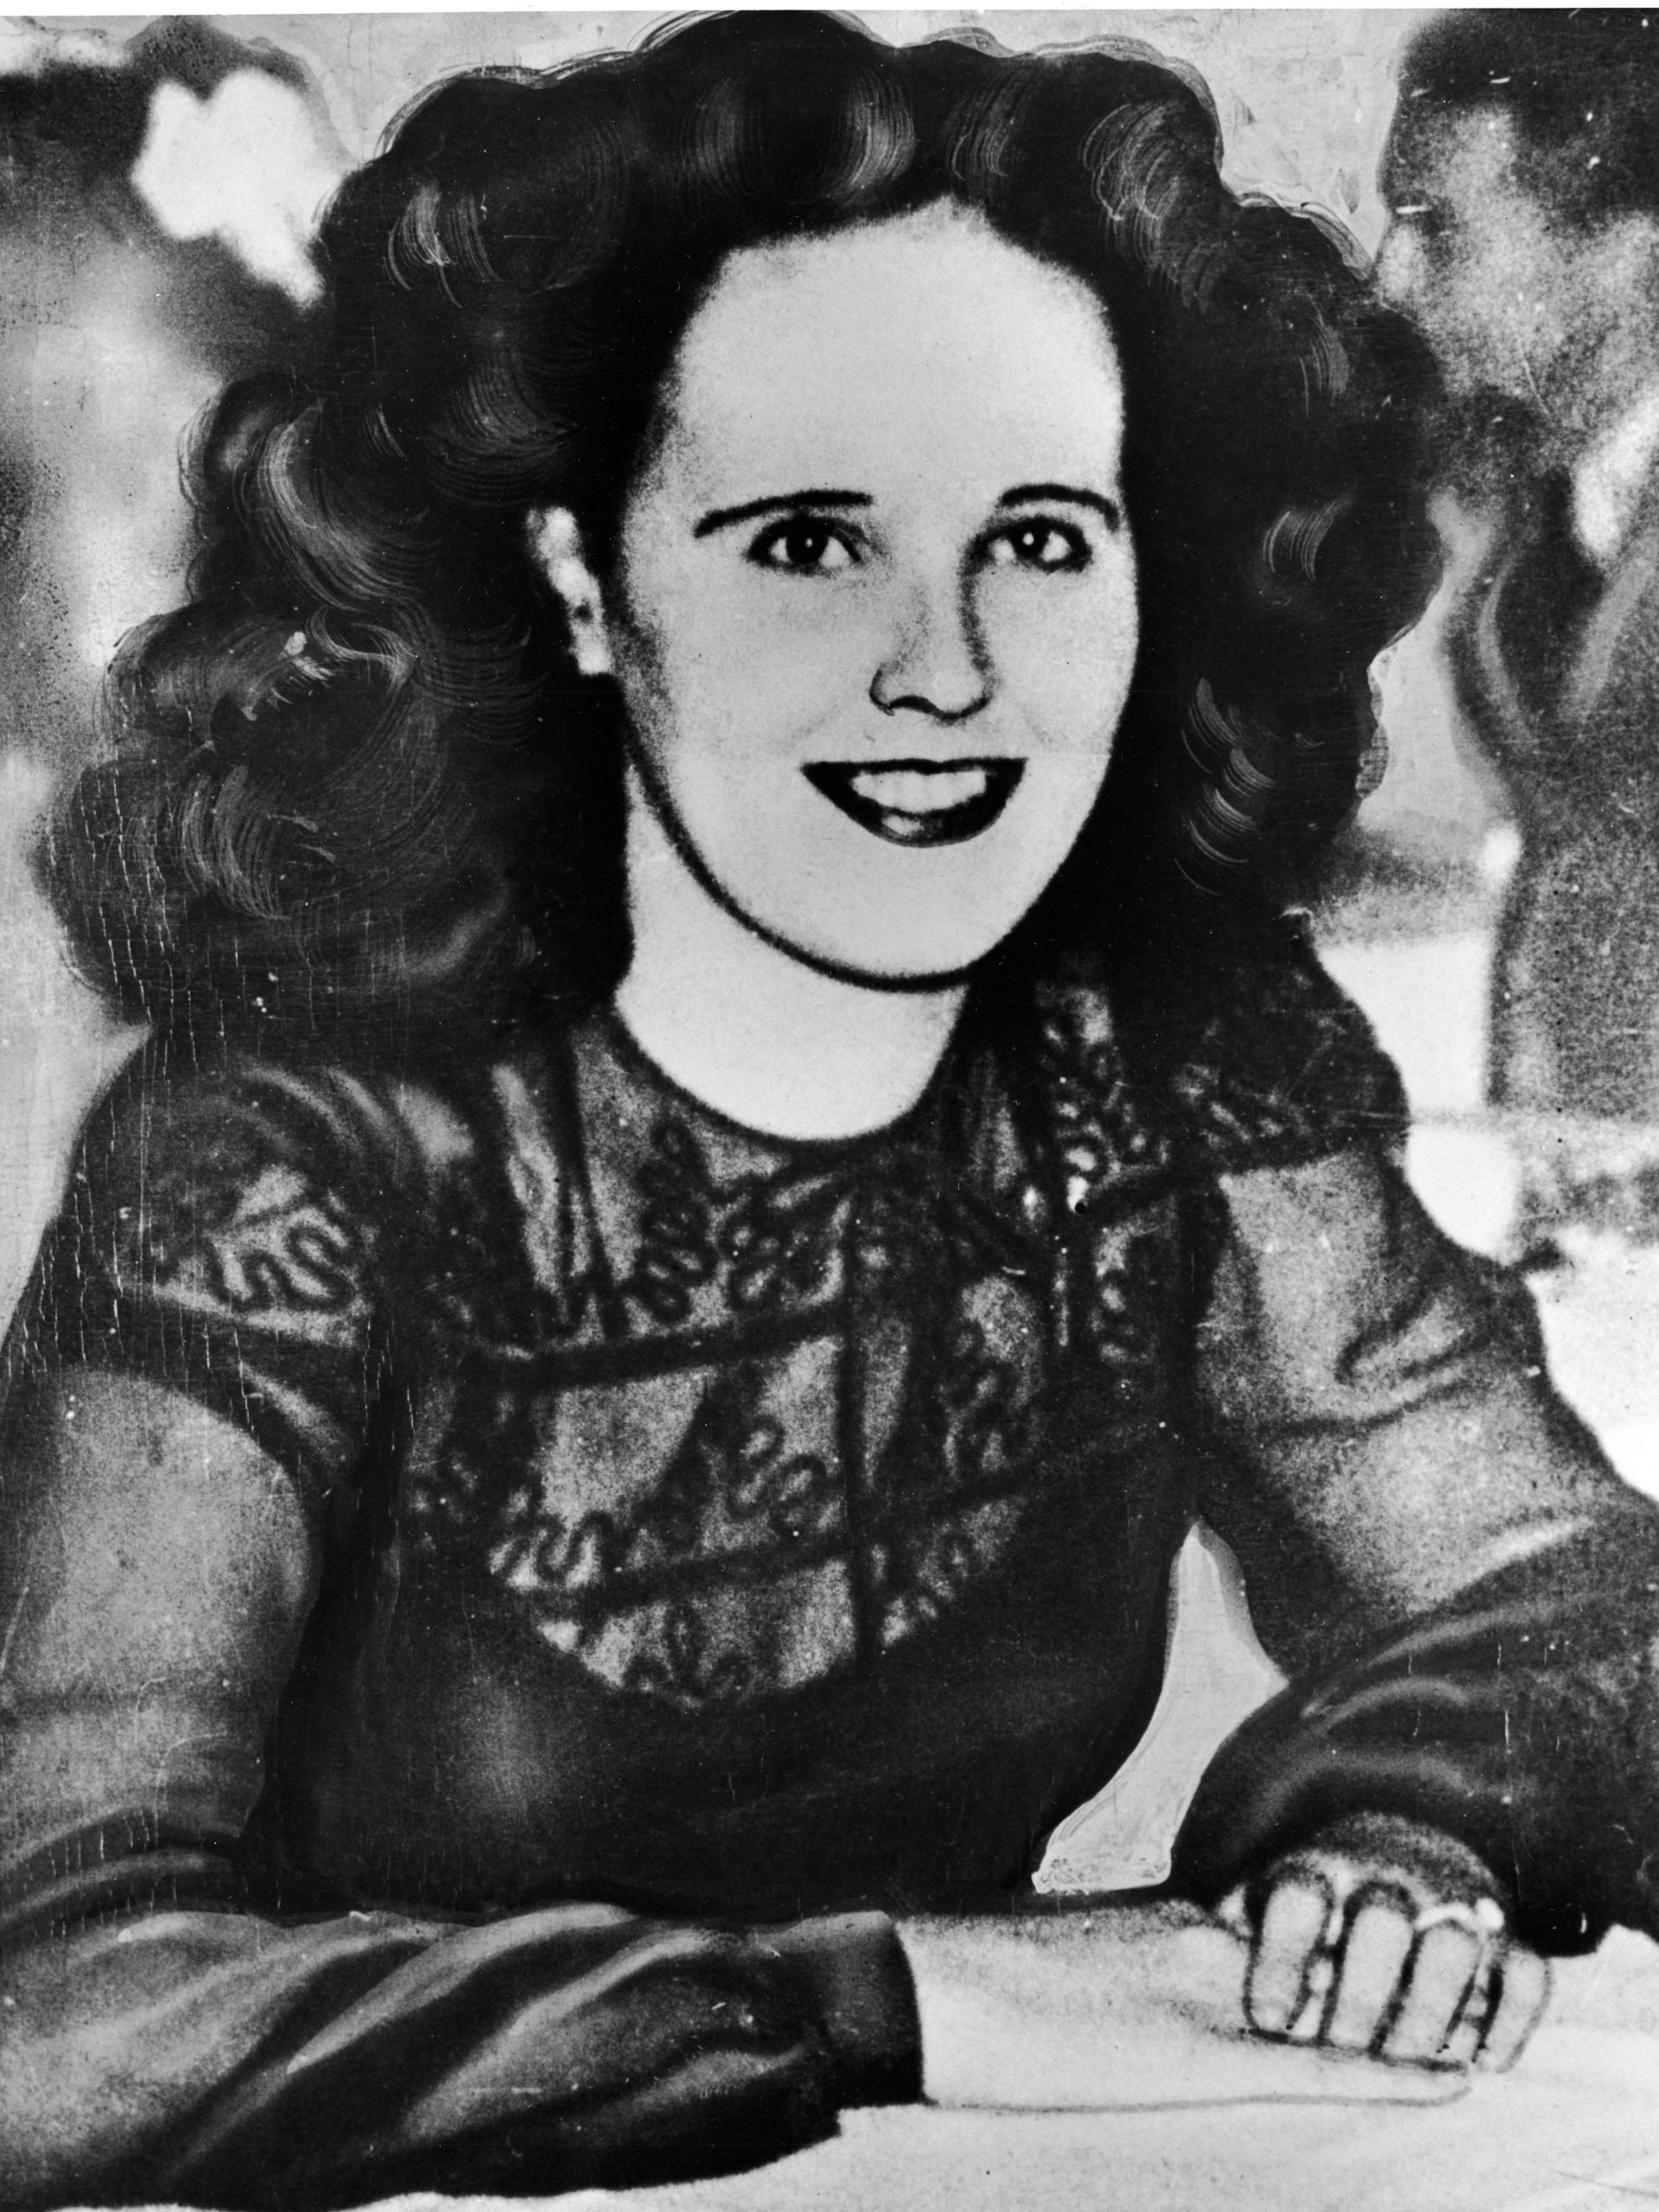 Portrait de l'aspirante actrice américaine et victime d'un meurtre, Elizabeth Short (1924 - 1947), dans les années 1940.